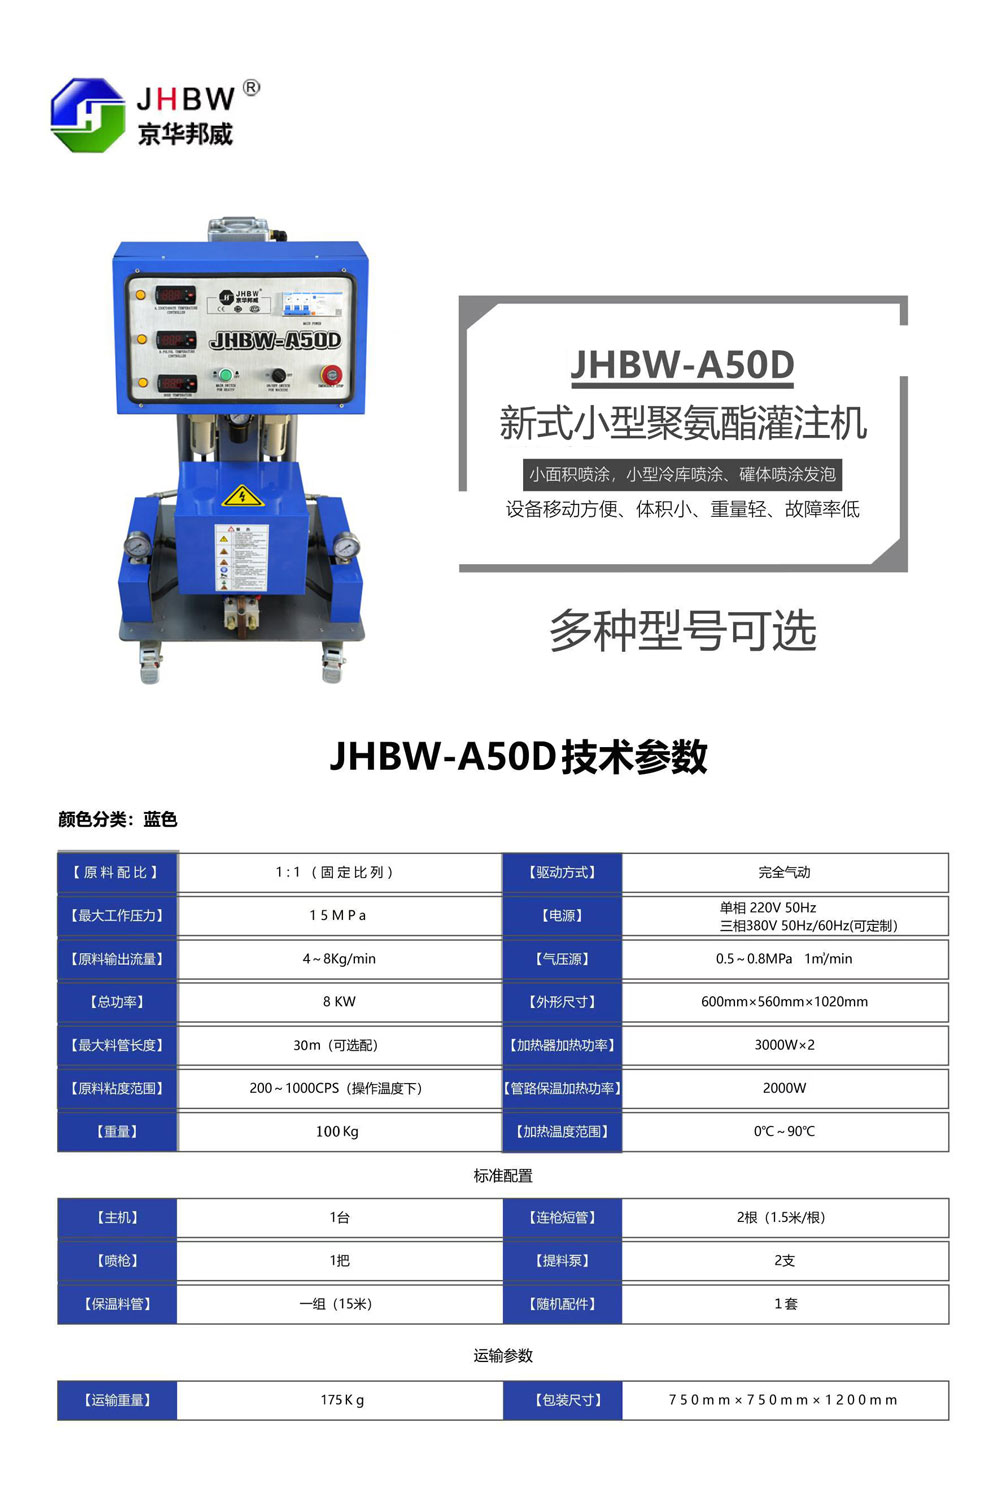 JHBW-A50D聚氨酯喷涂设备